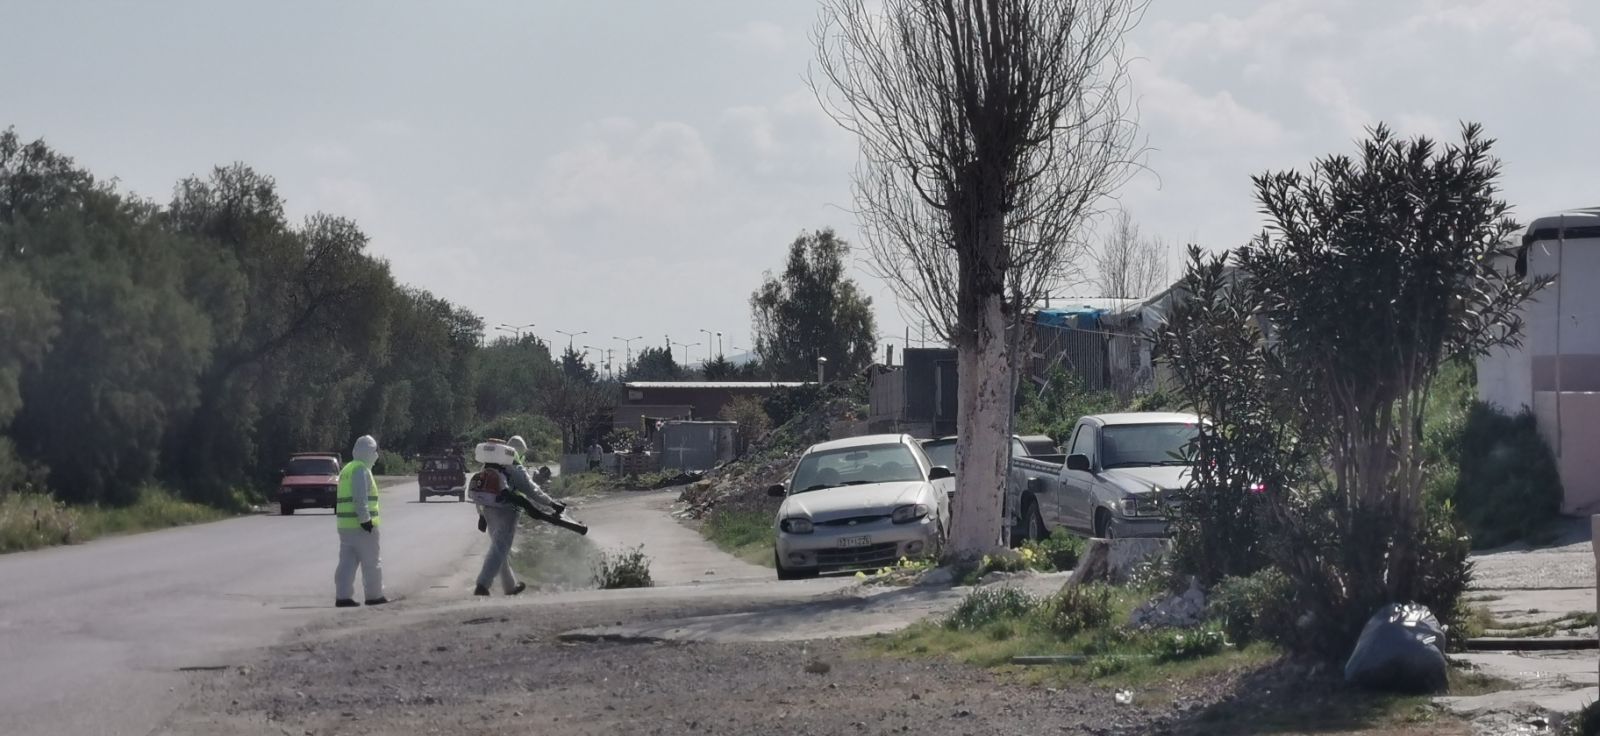 Χανιά: Δεν γίνεται σήμερα η απολύμανση καταυλισμών Ρομά λόγω καιρού